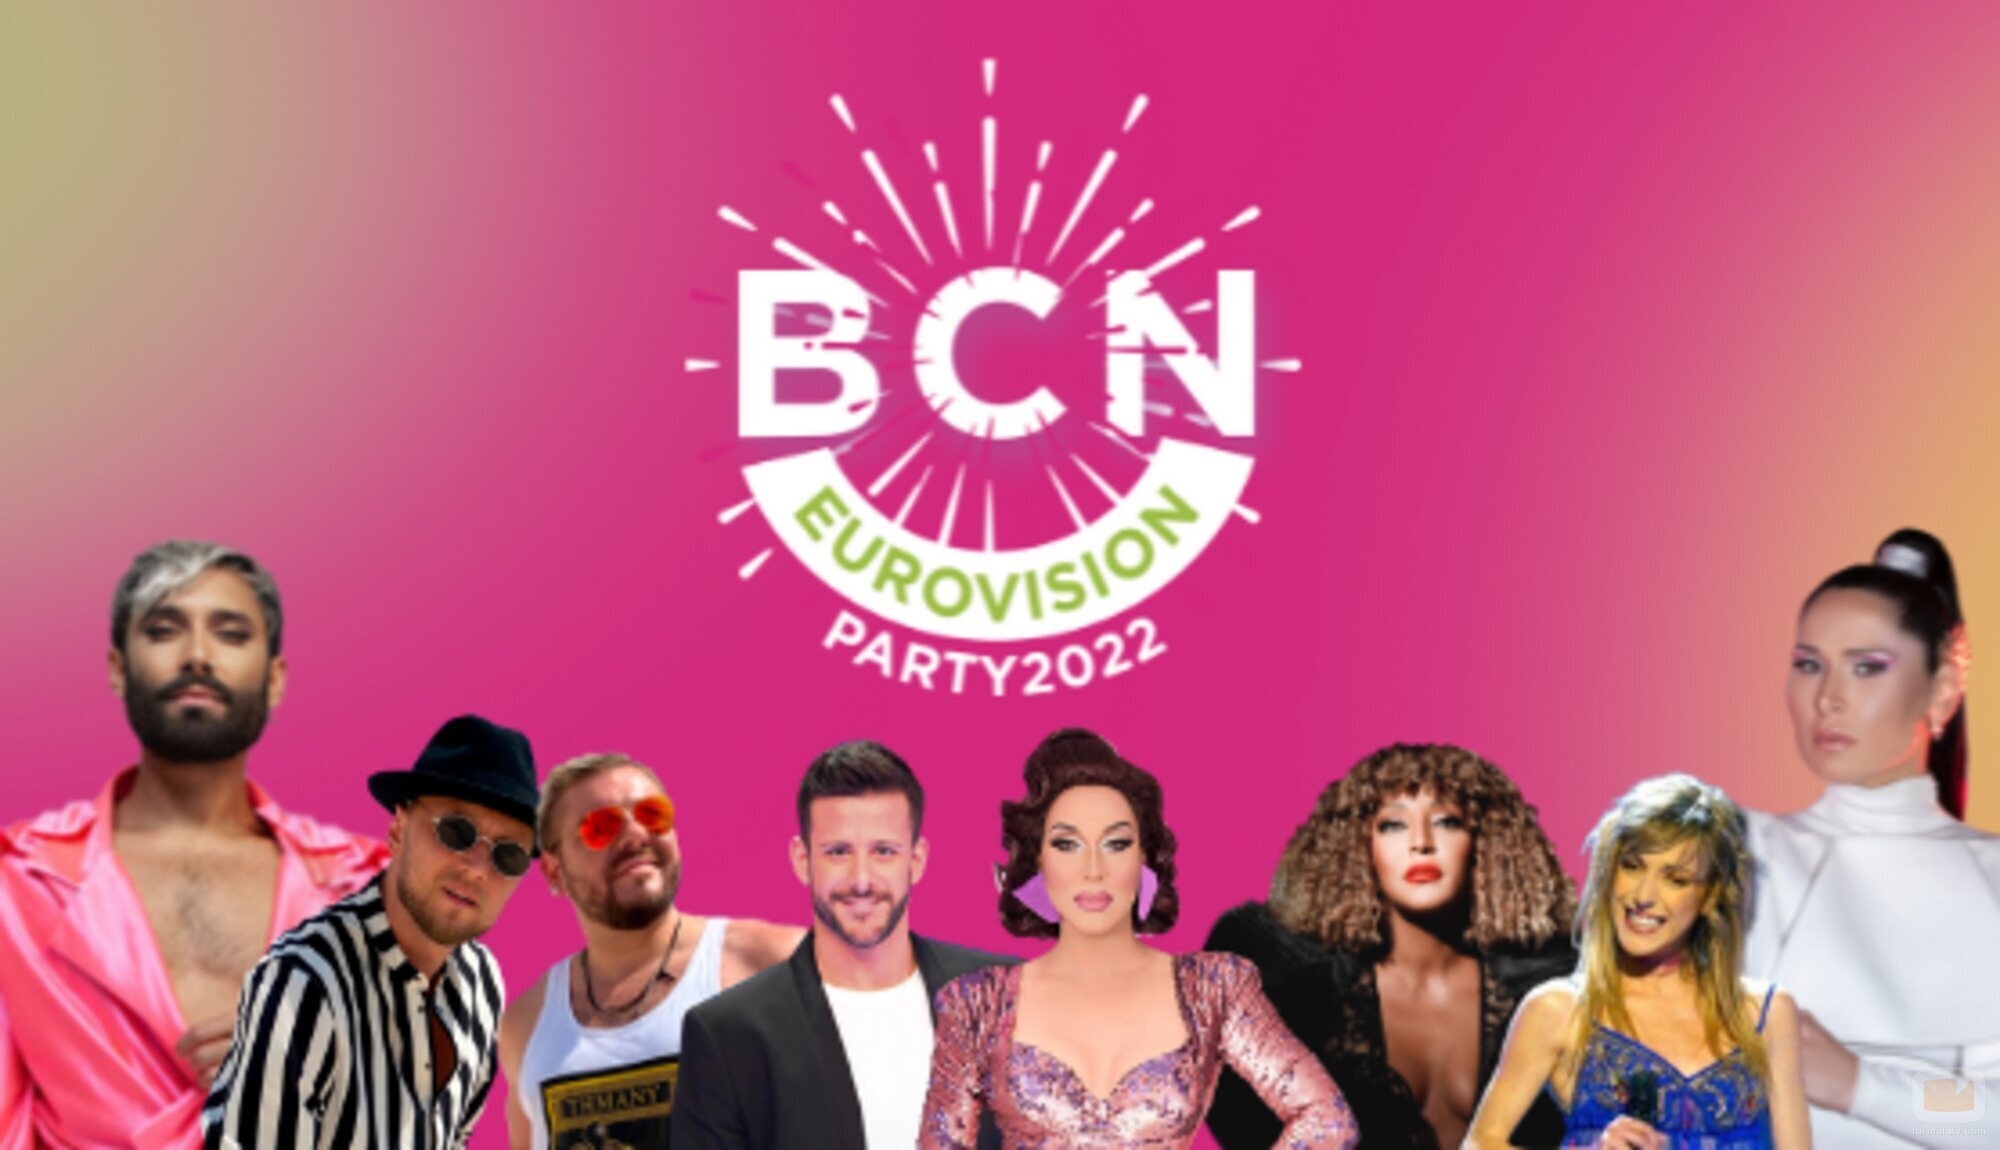 La Barcelona Eurovision Party da la bienvenida a sus artistas invitados